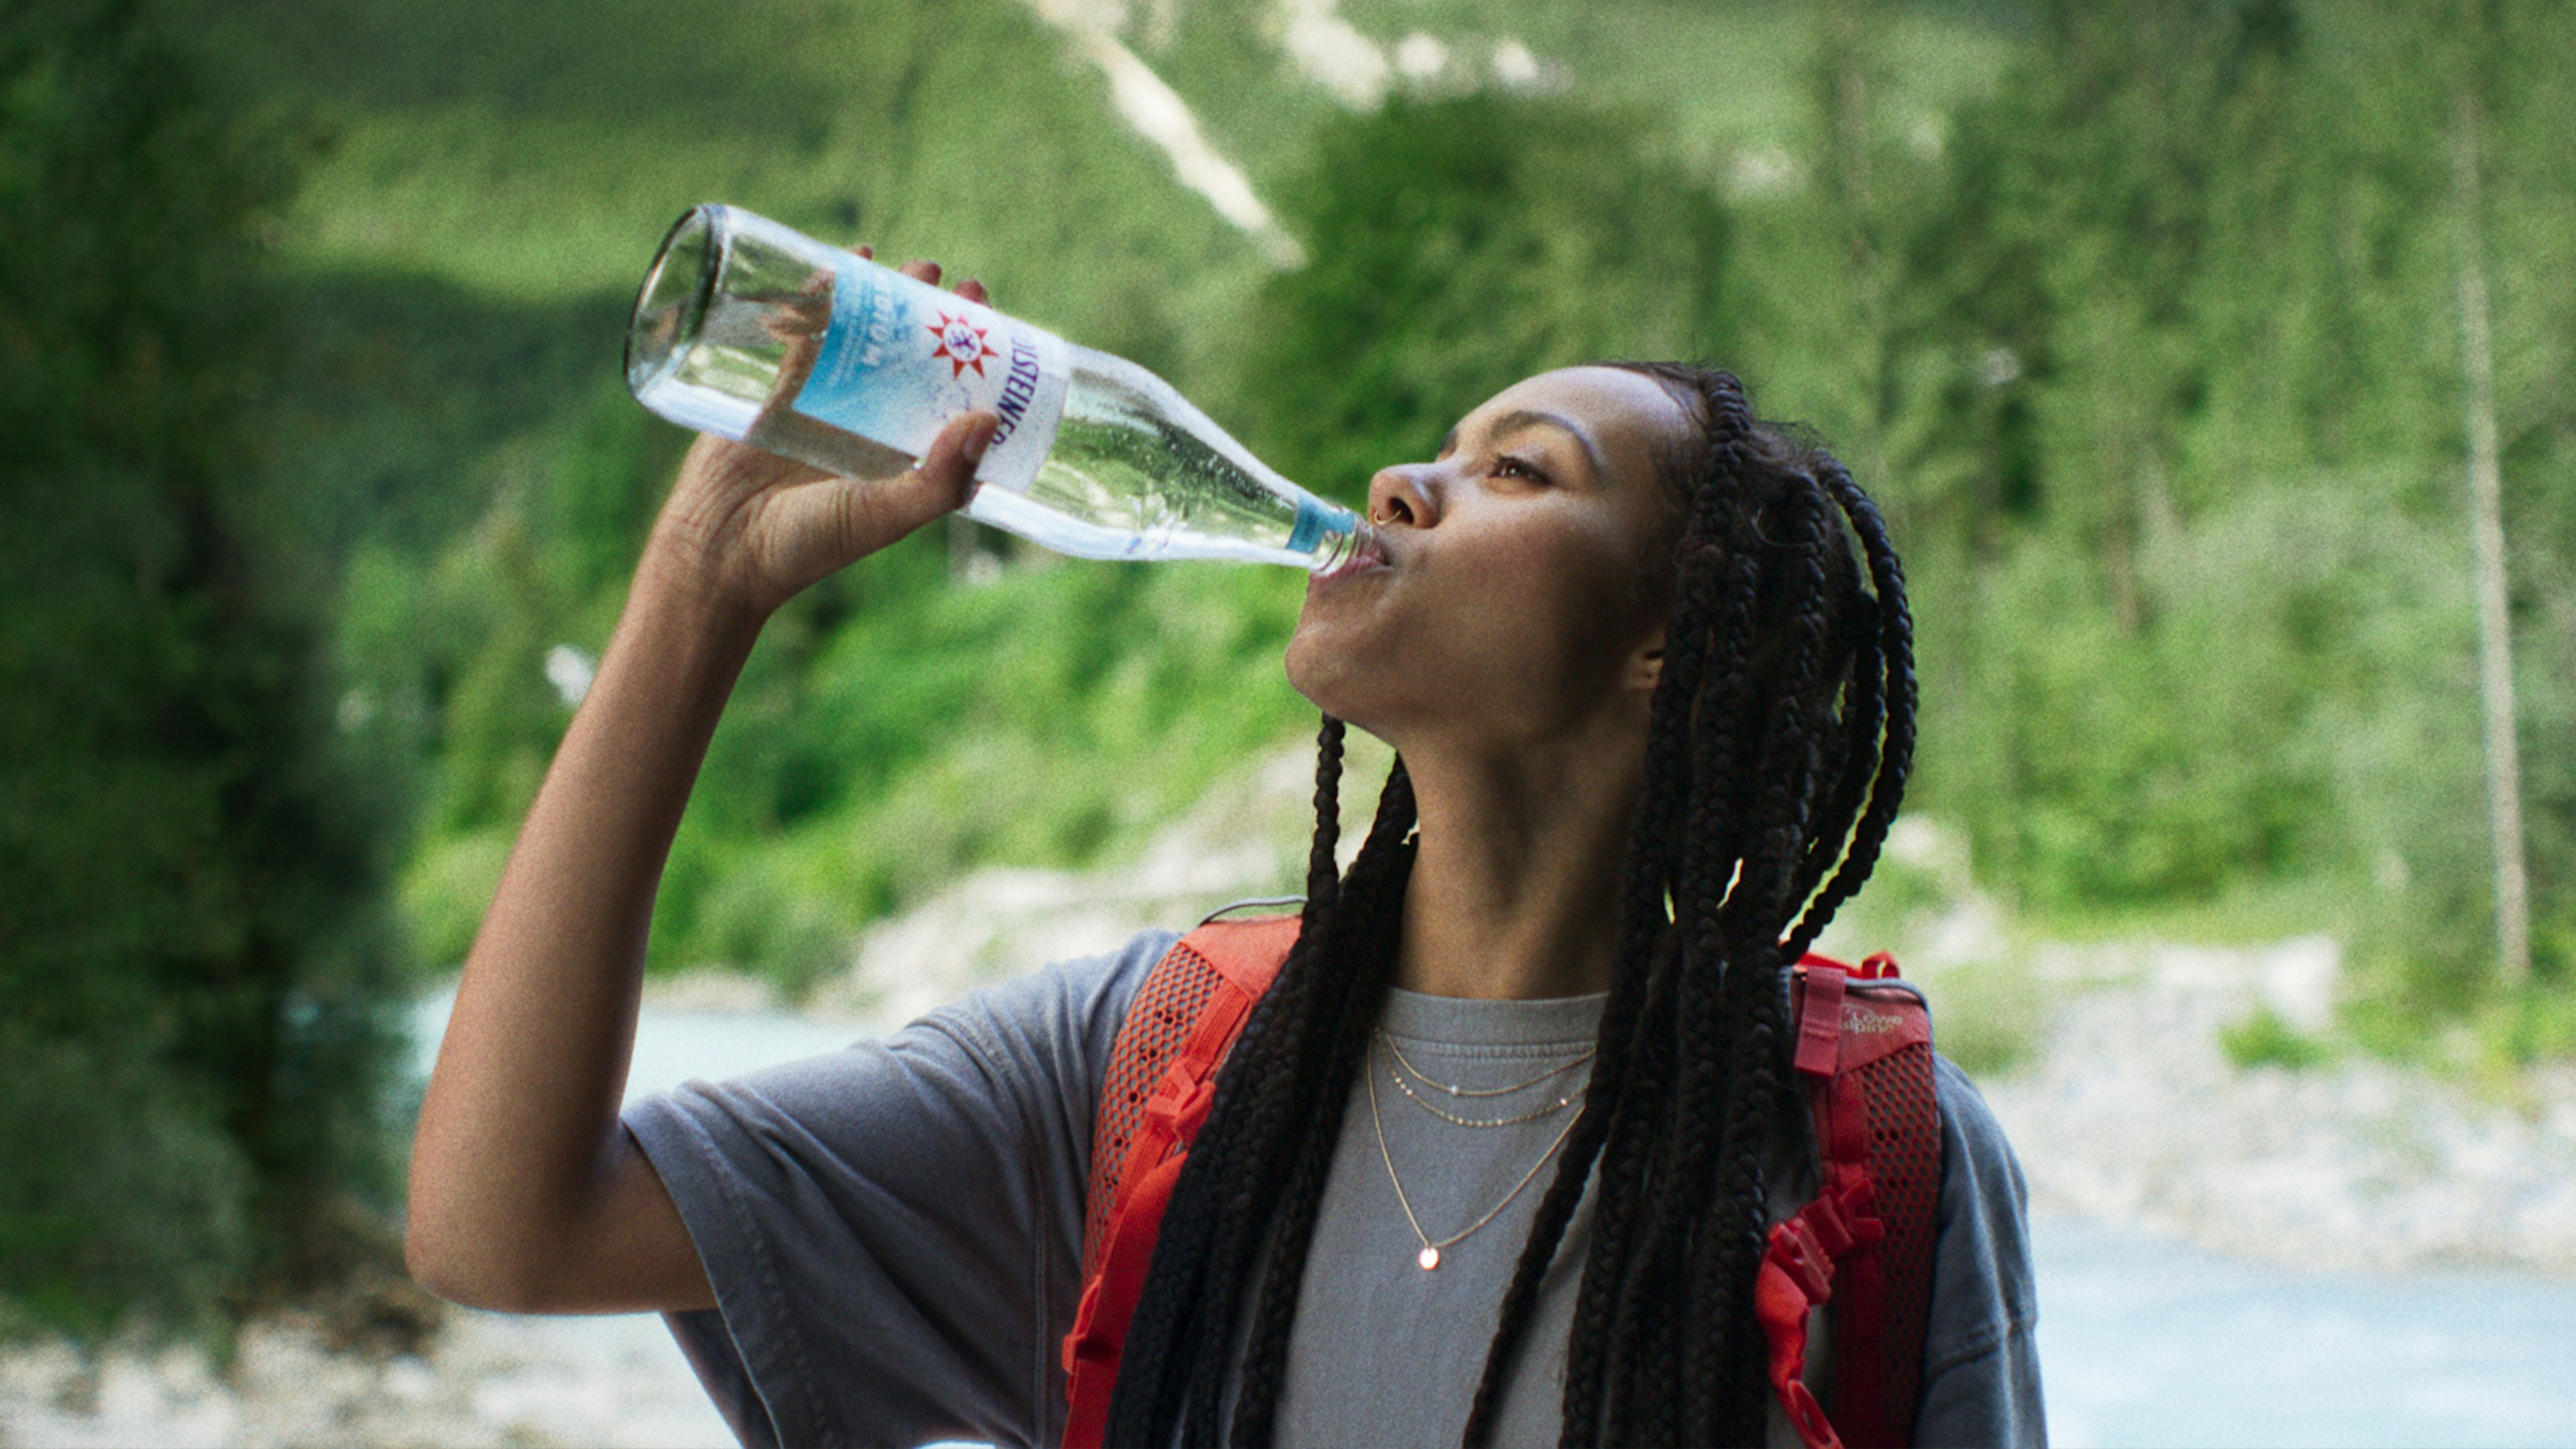 Ein Key Visual aus der Kampagne Bringt die Kraft zurück, es zeigt eine Frau die Gerolsteiner Medium trinkt aus einer 0,75l-Glasflasche